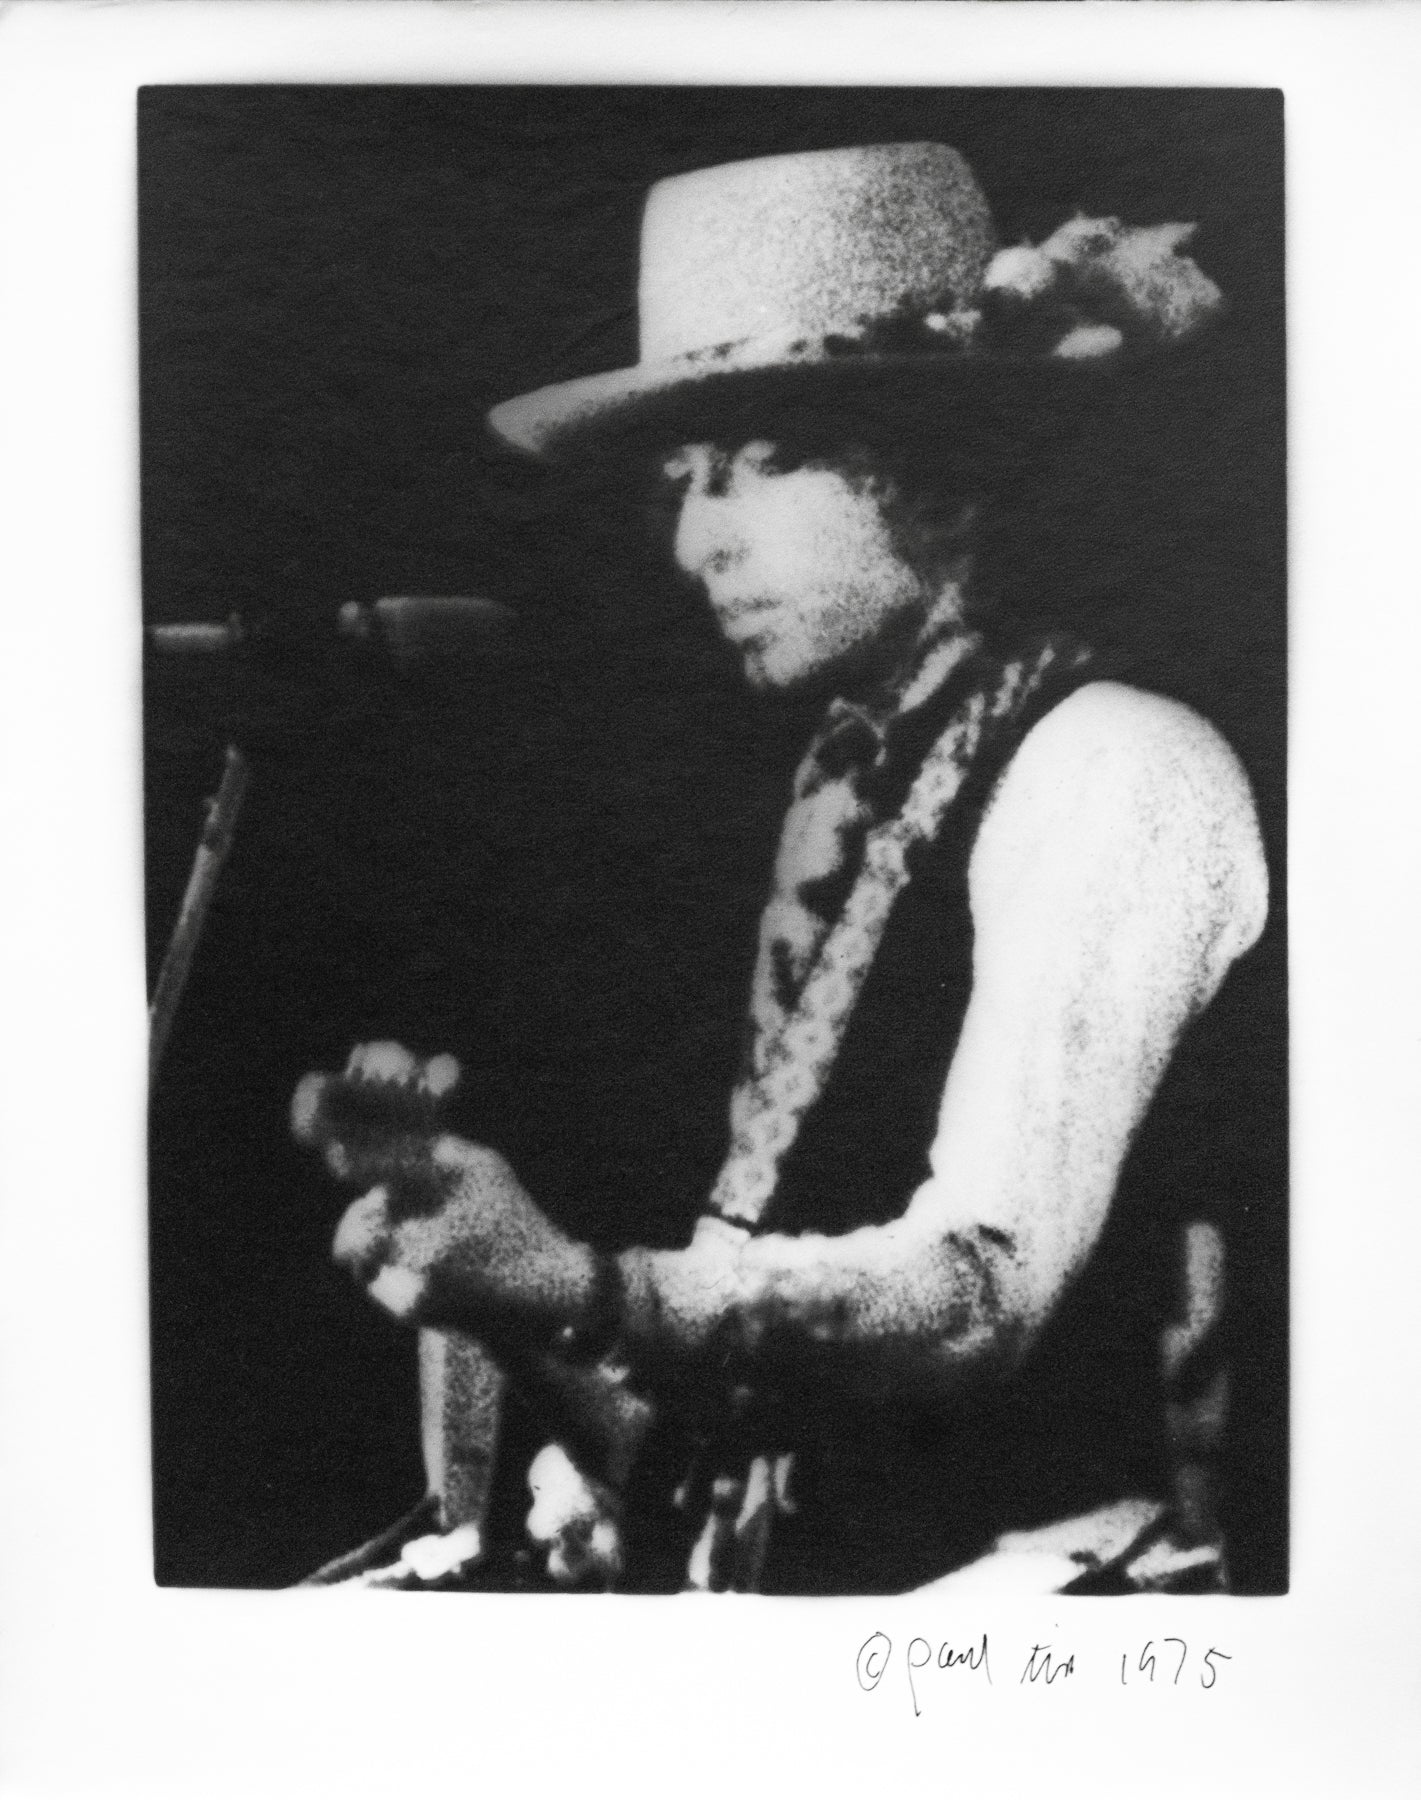 Bob Dylan, Niagara Falls N.Y., 1975, Songbook Cover